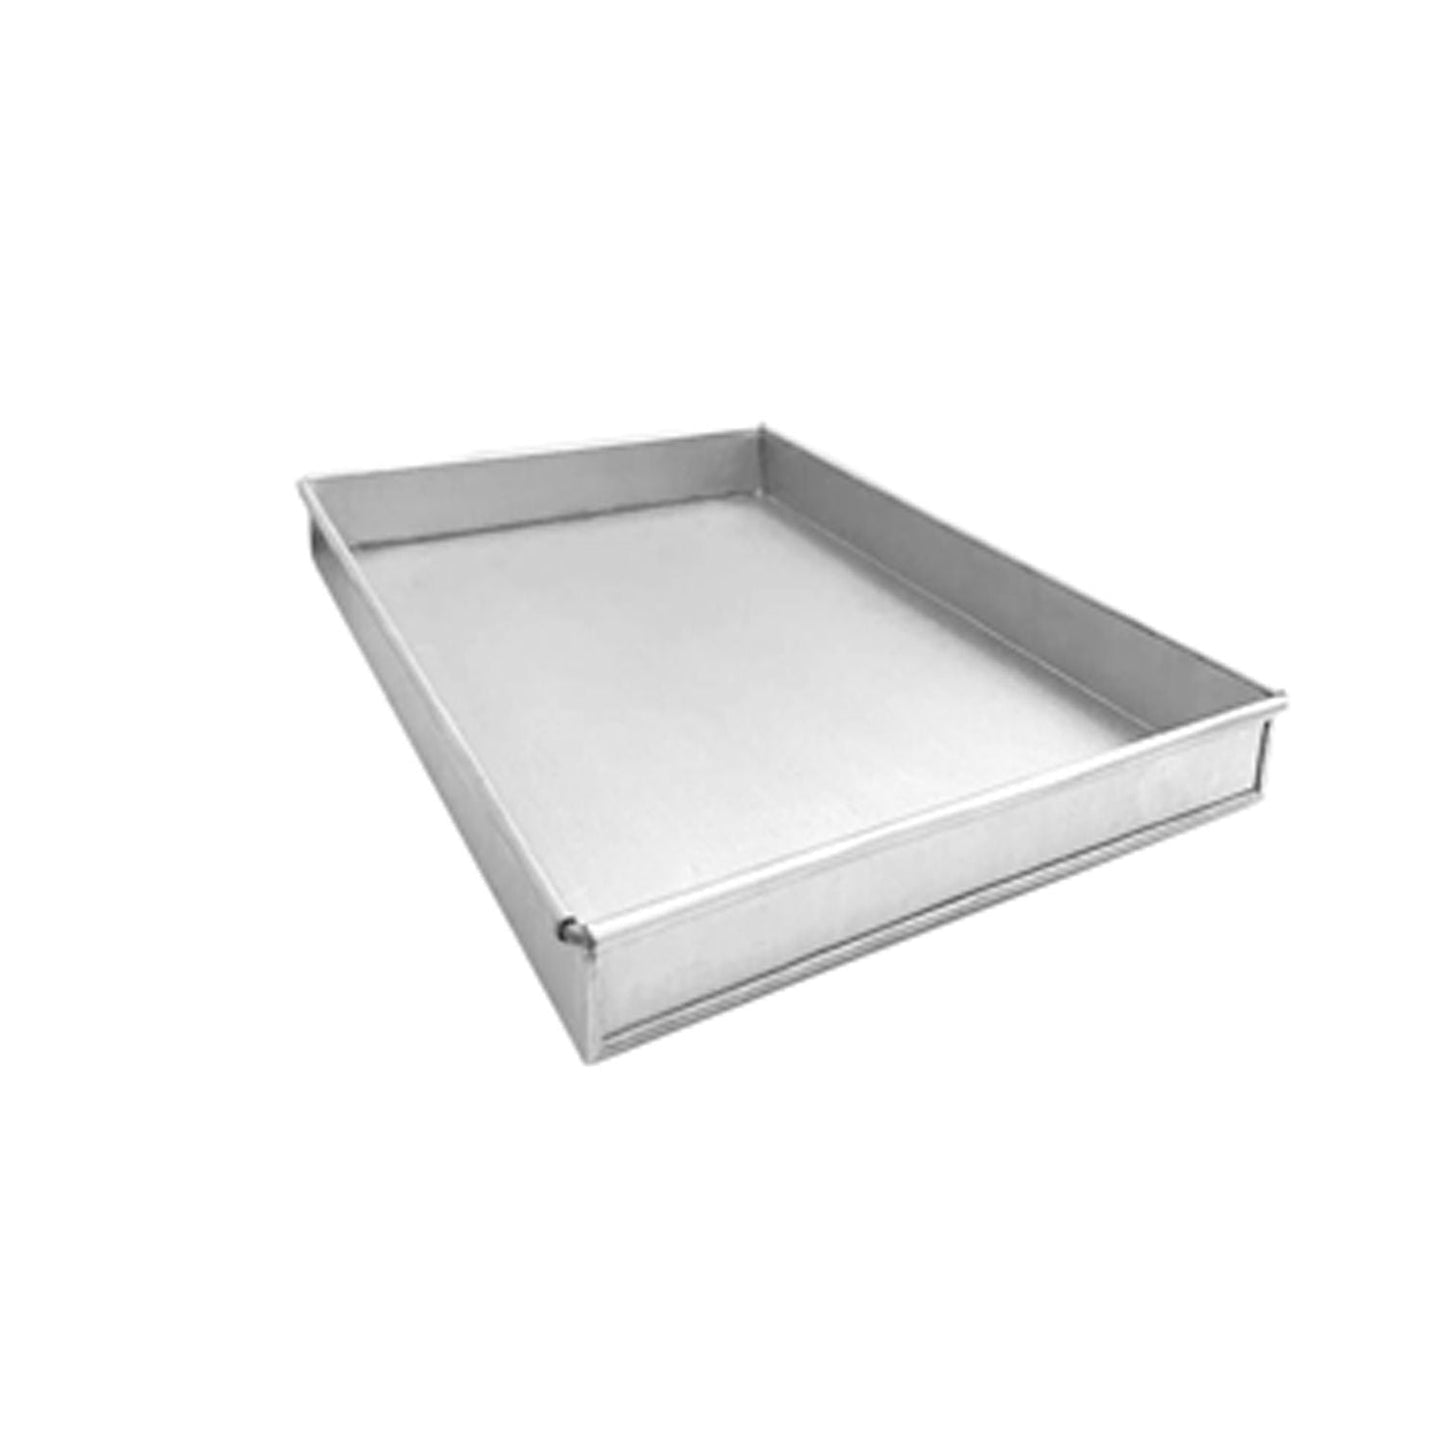 Aluminised Baking Tray - 425 x 300 x 25 mm - Small